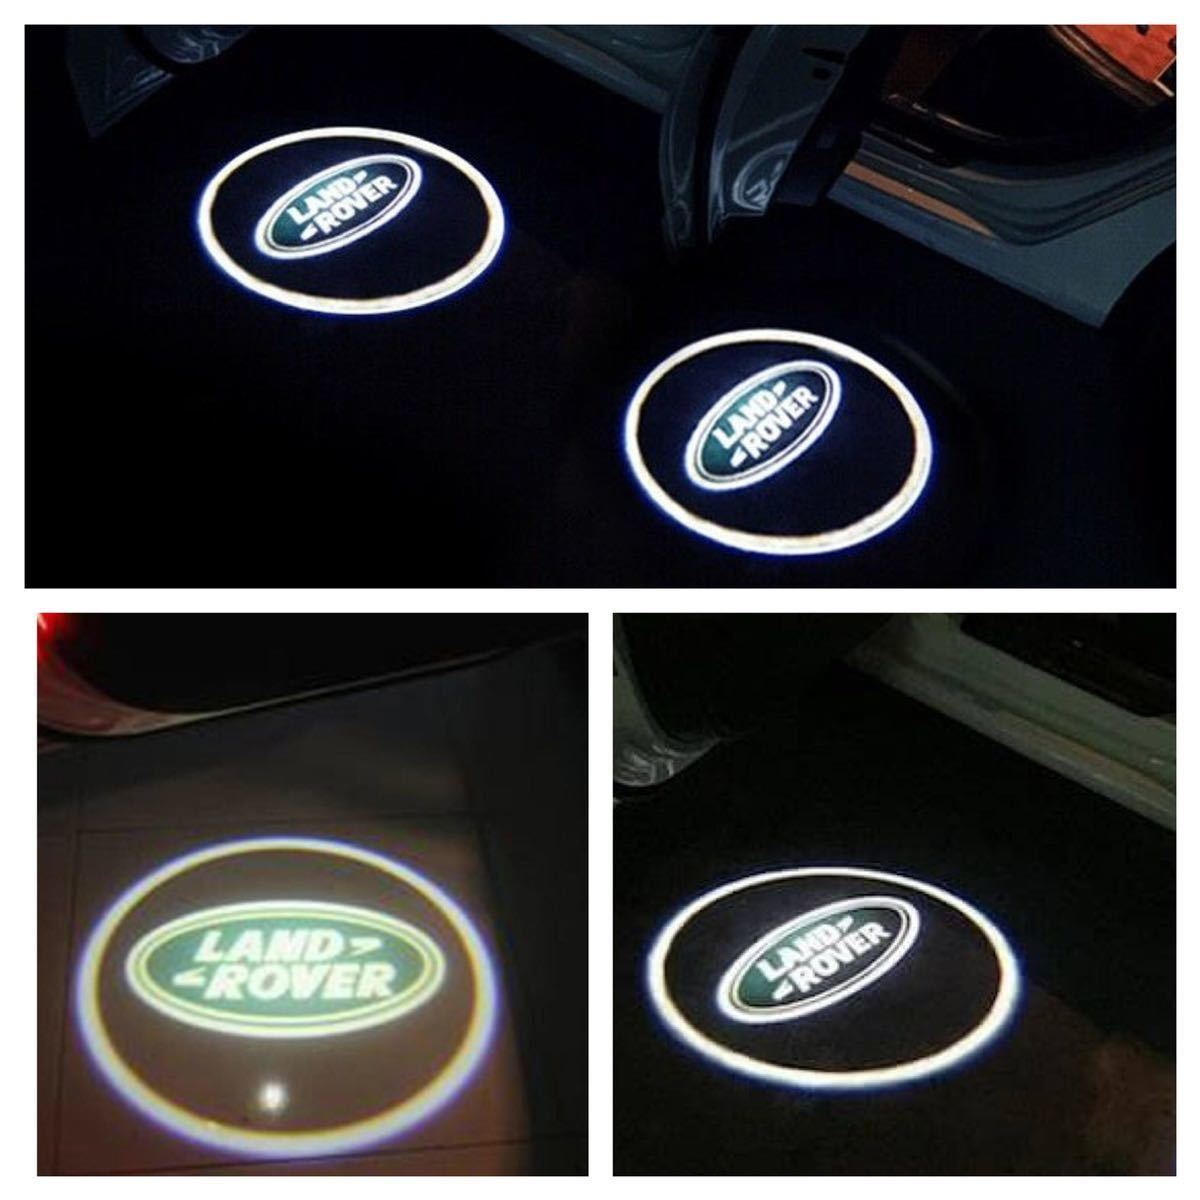 ランドローバー ロゴ カーテシ ランプ レンジローバー オーロラ フリーランダー 2 純正交換タイプ LED ウェルカムプロジェクター ライト_画像1